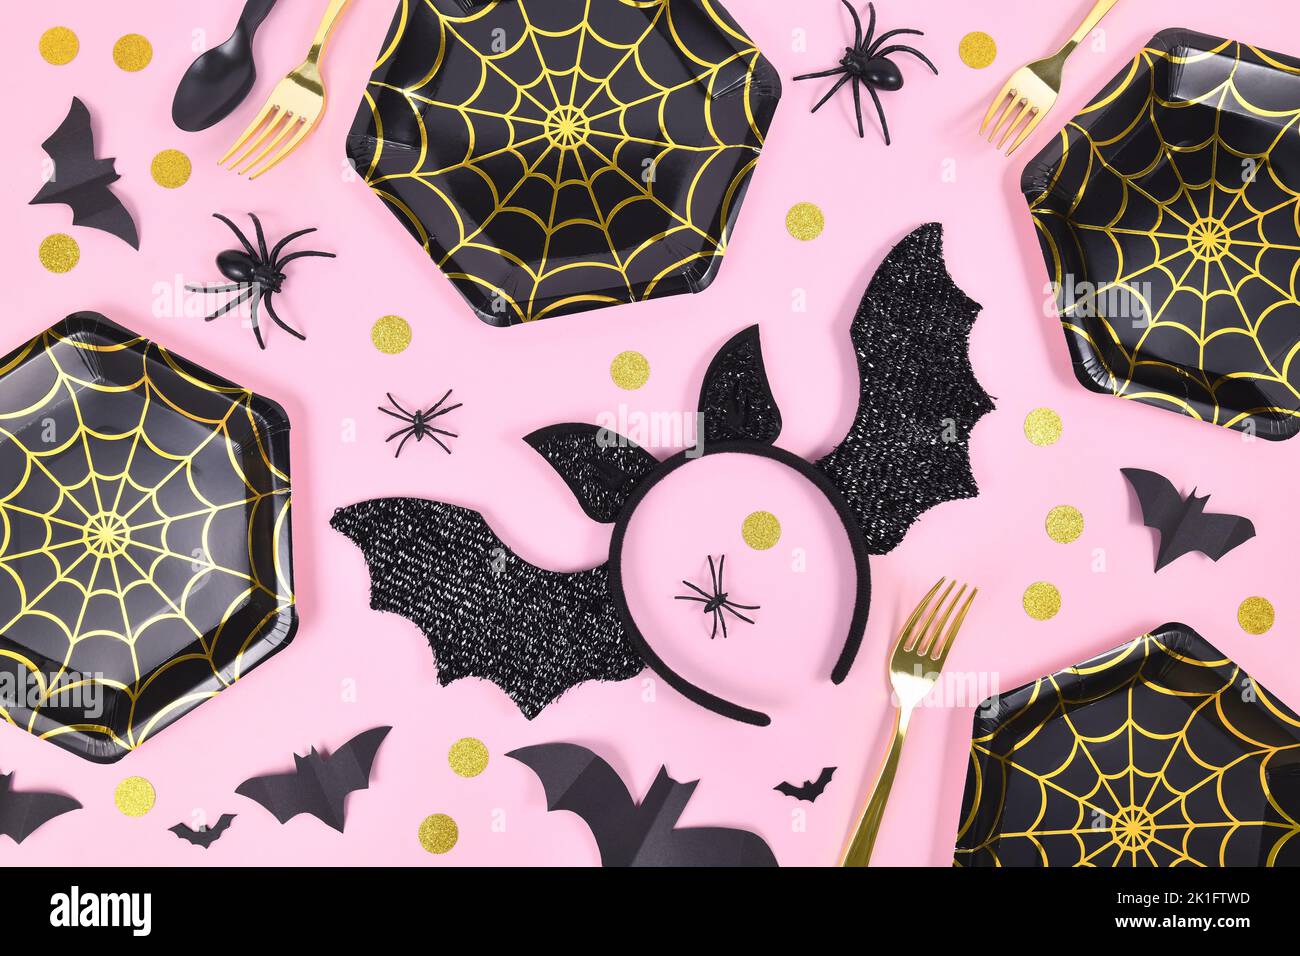 Halloween Party Flat lay avec des plaques de toile d'araignée noir et or, araignées et confetti sur fond rose Banque D'Images